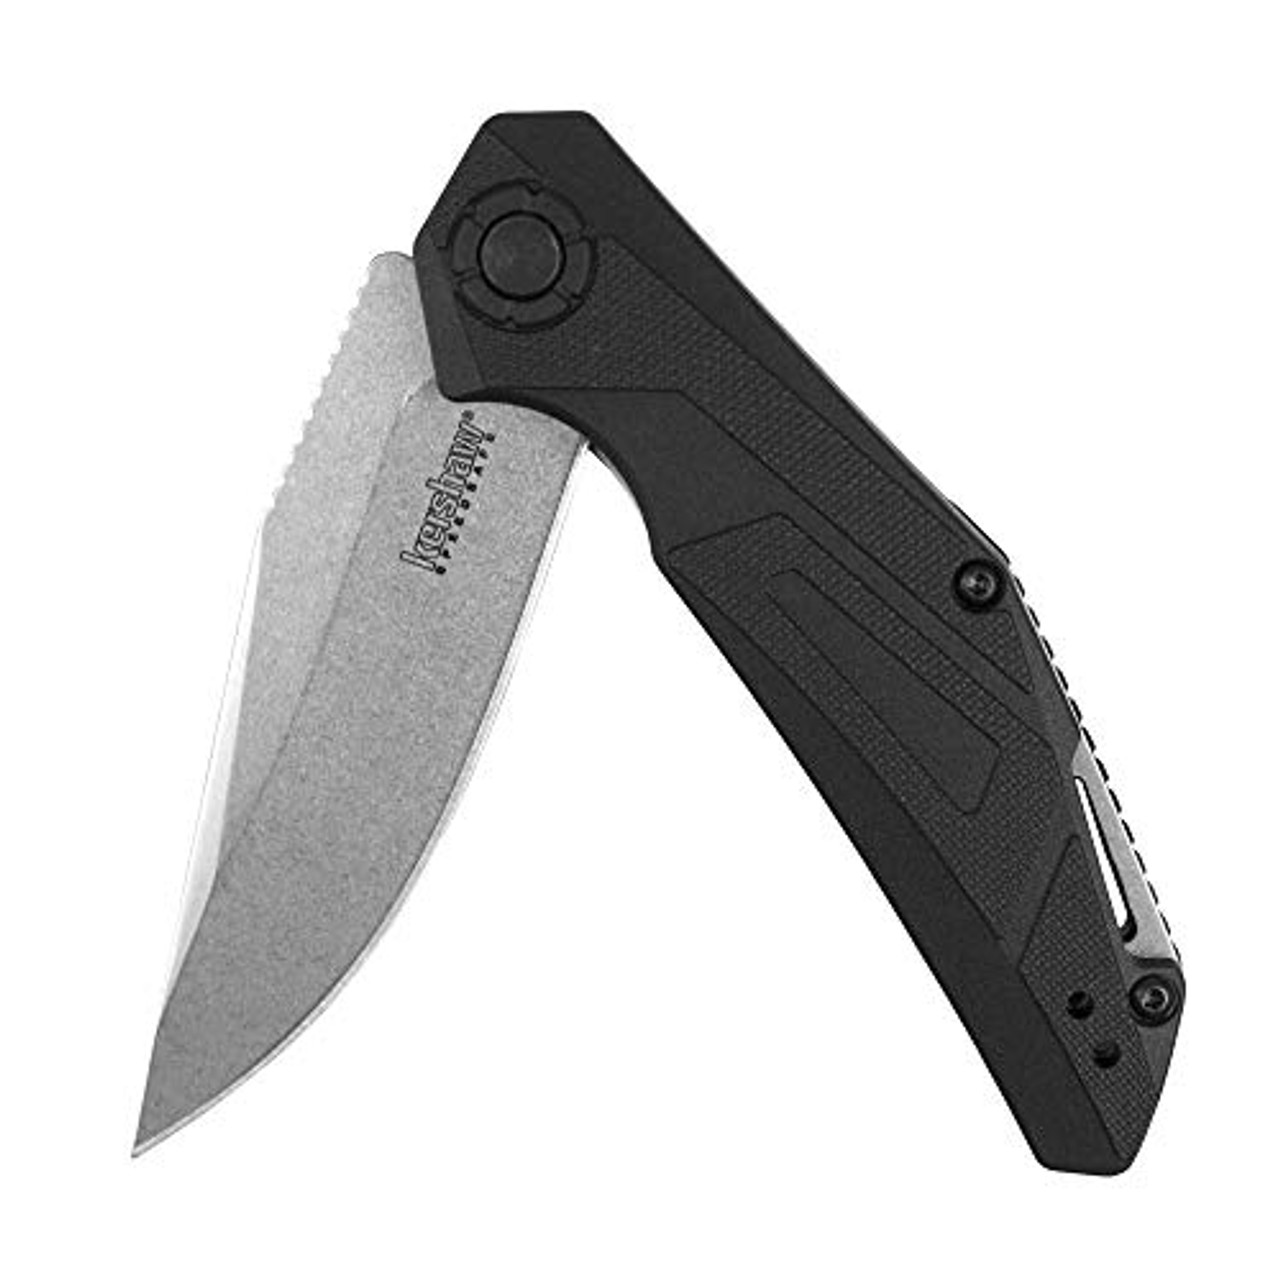 Camshaft Pocketknife, Value